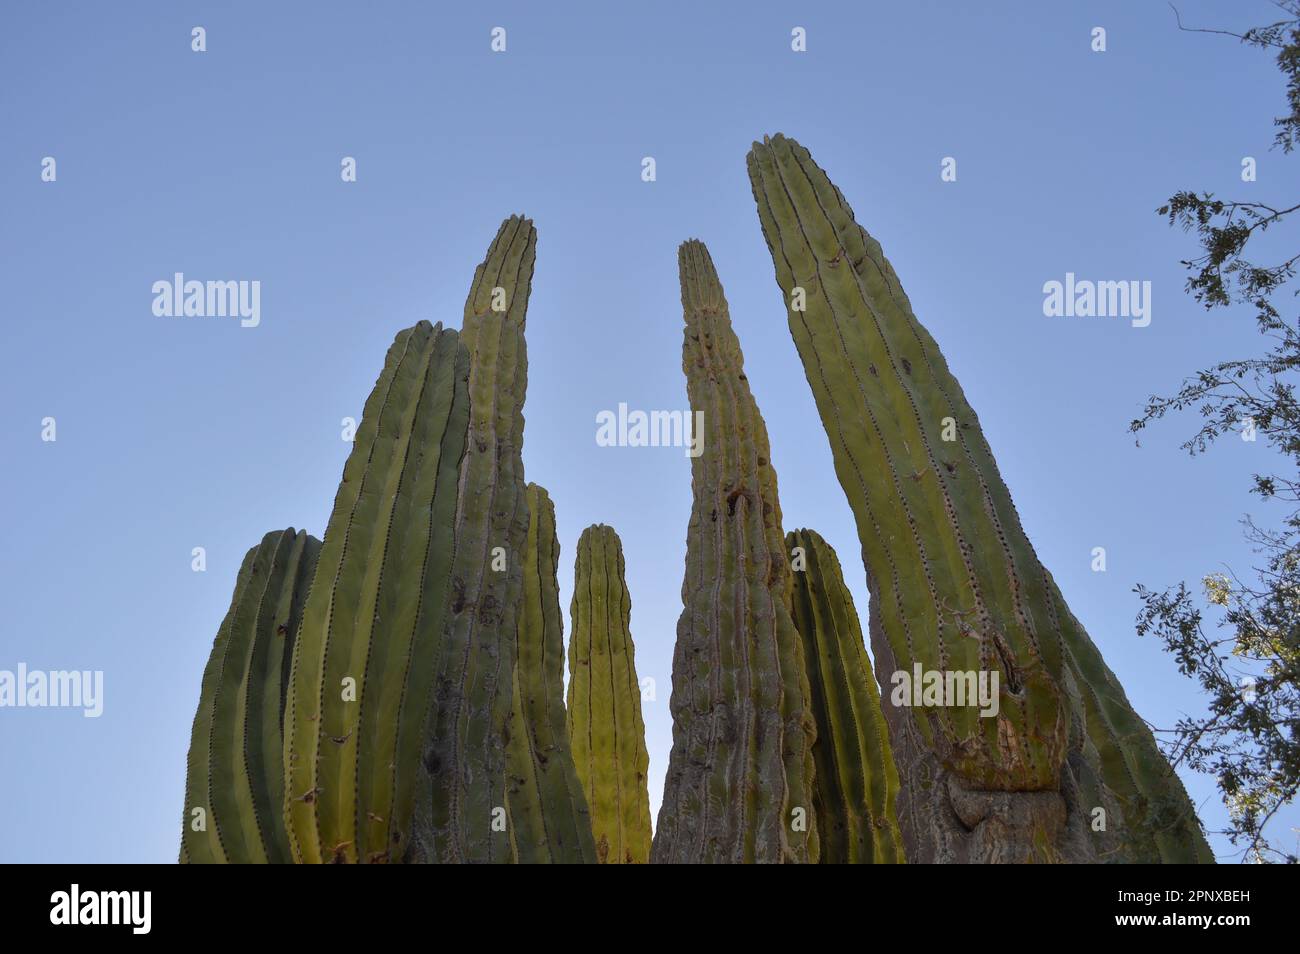 Las imágenes fueron tomadas en un municipio de Baja California Sur, llamado Mulegé. Las plantas están en área de un volcán llamado Las Tres Vírgenes. Foto de stock